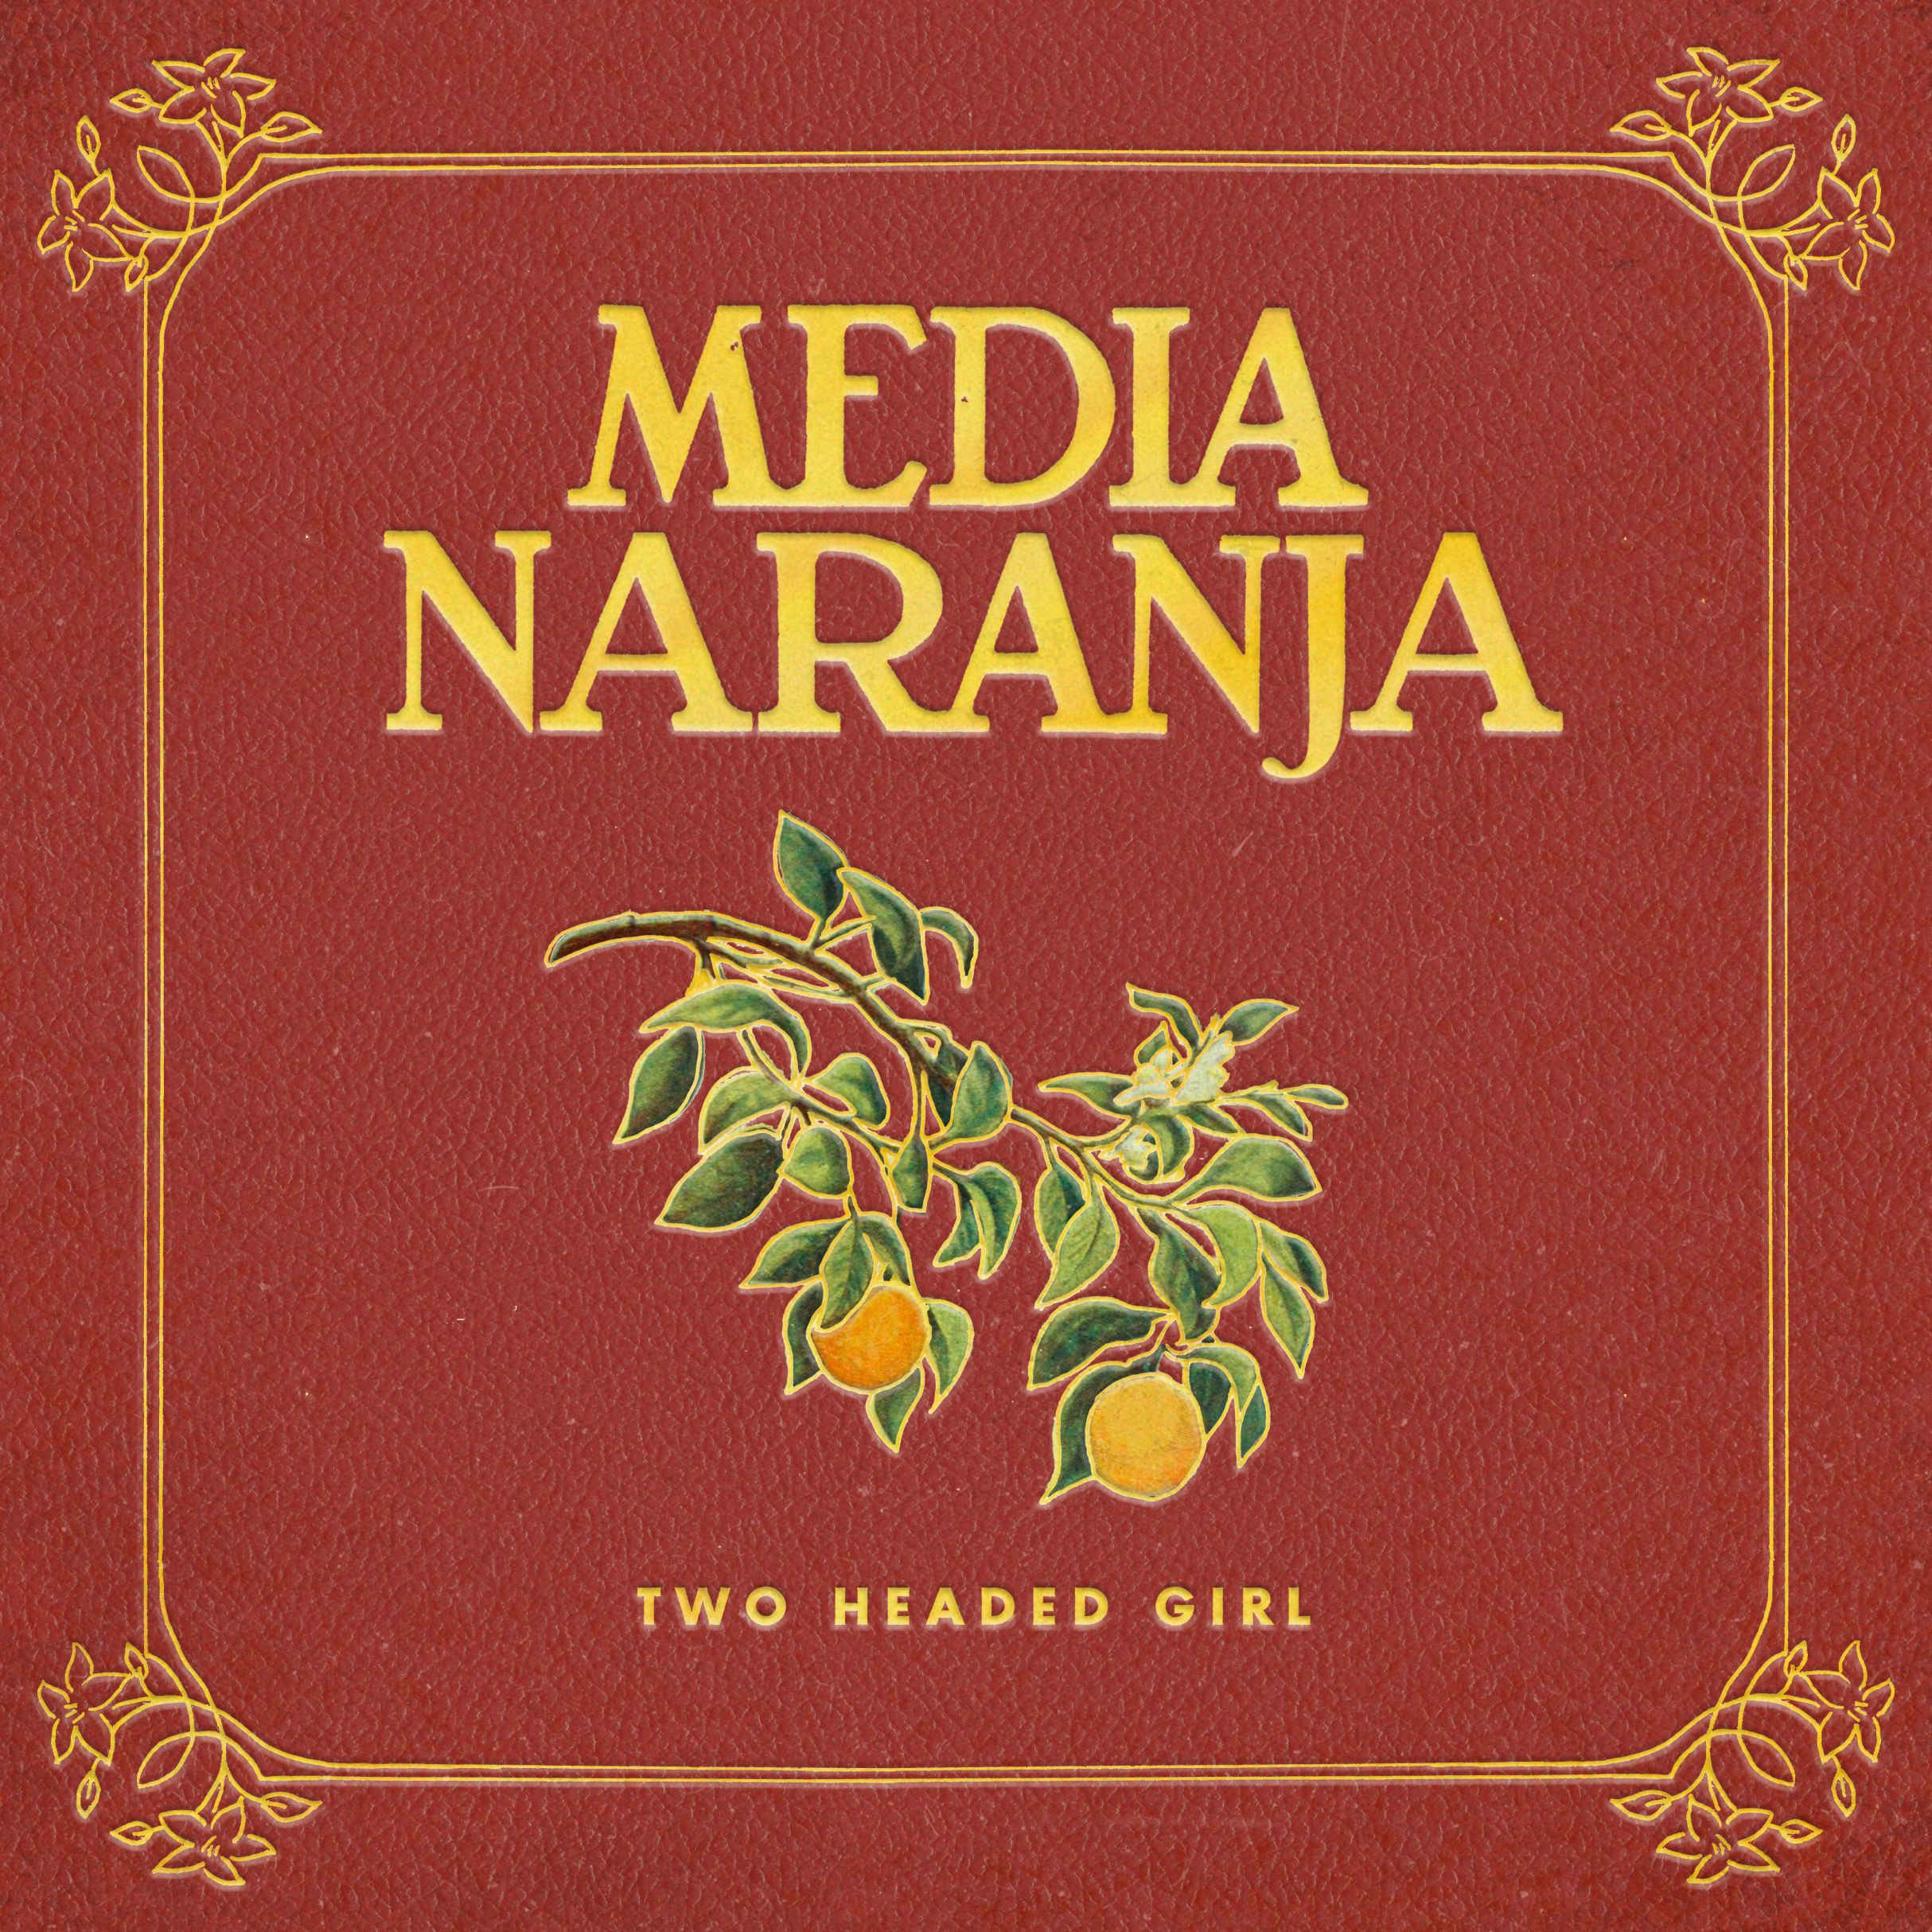 "Media Naranja" over a design of orange tree branches